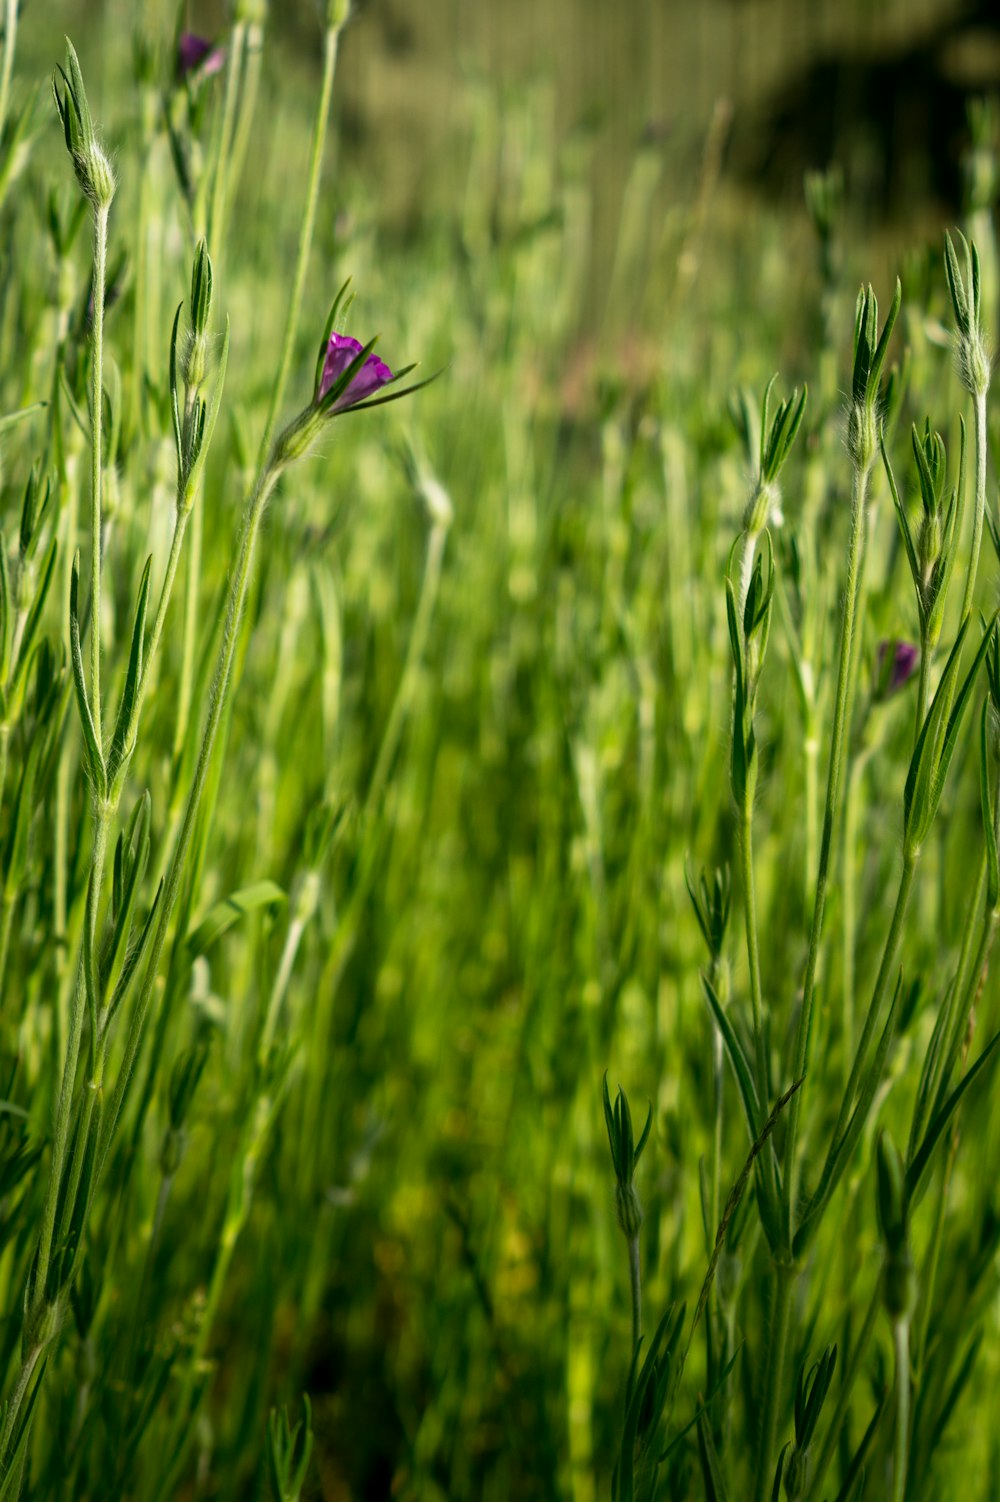 flor púrpura en campo de hierba verde durante el día